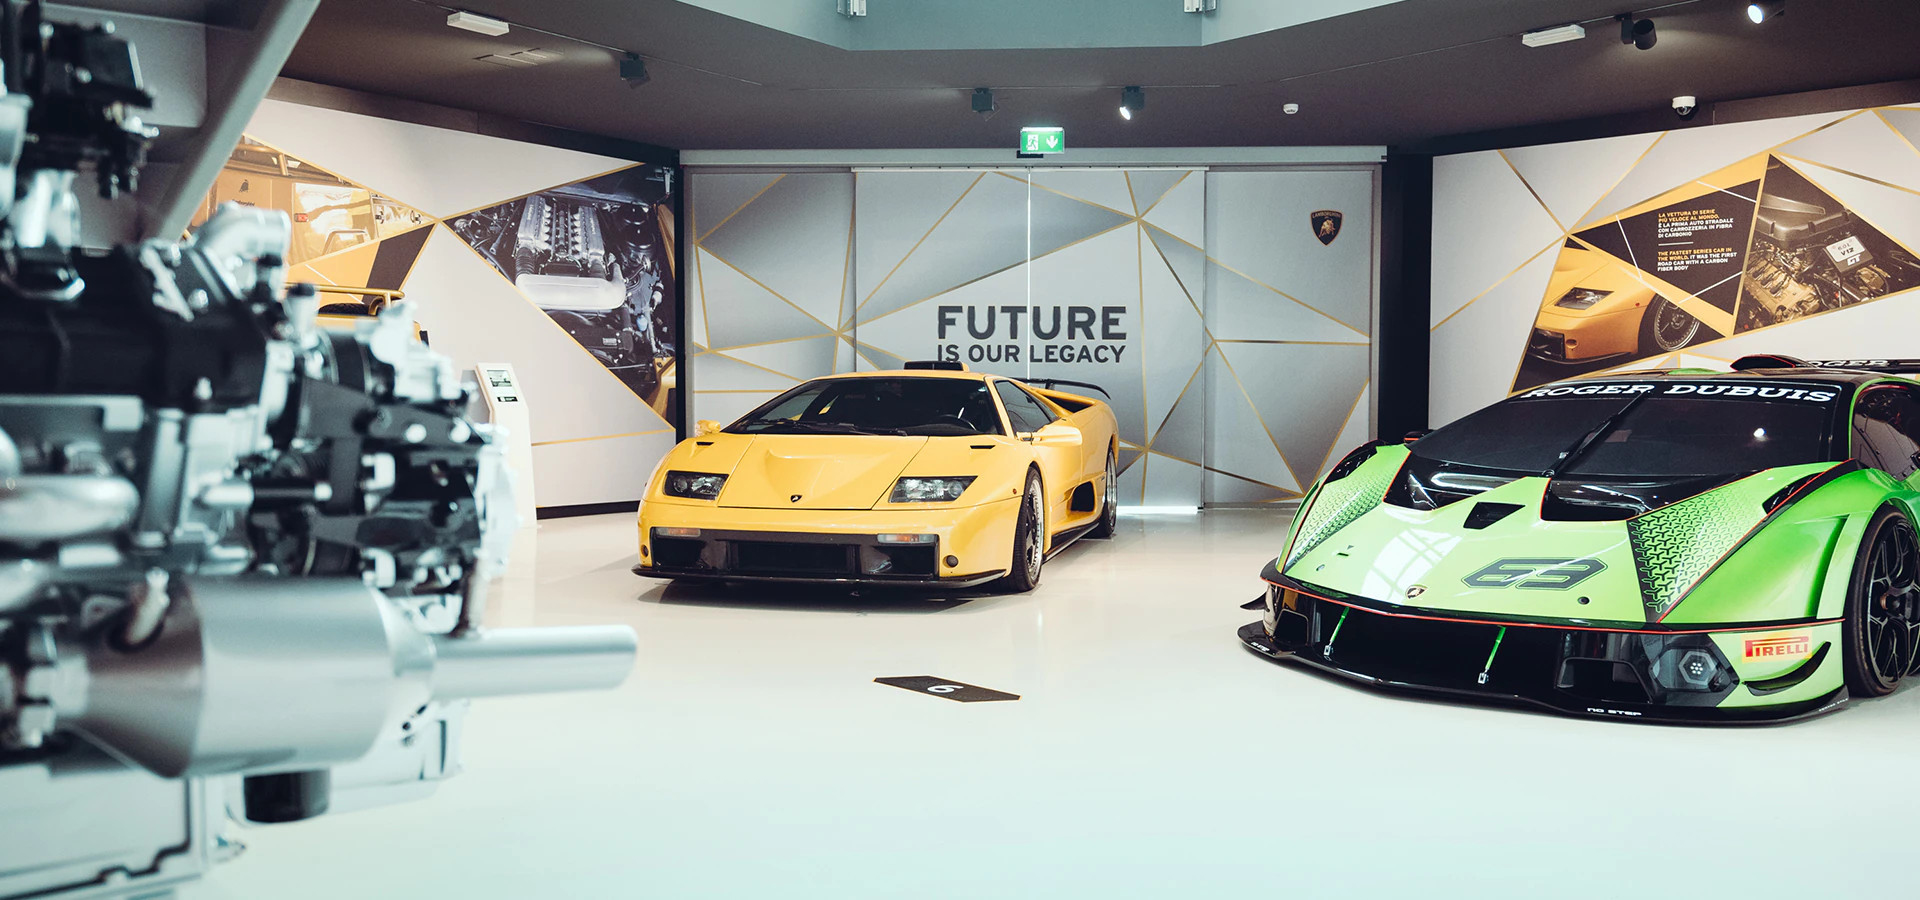 Lamborghini Museum - Welcome Reggio Emilia